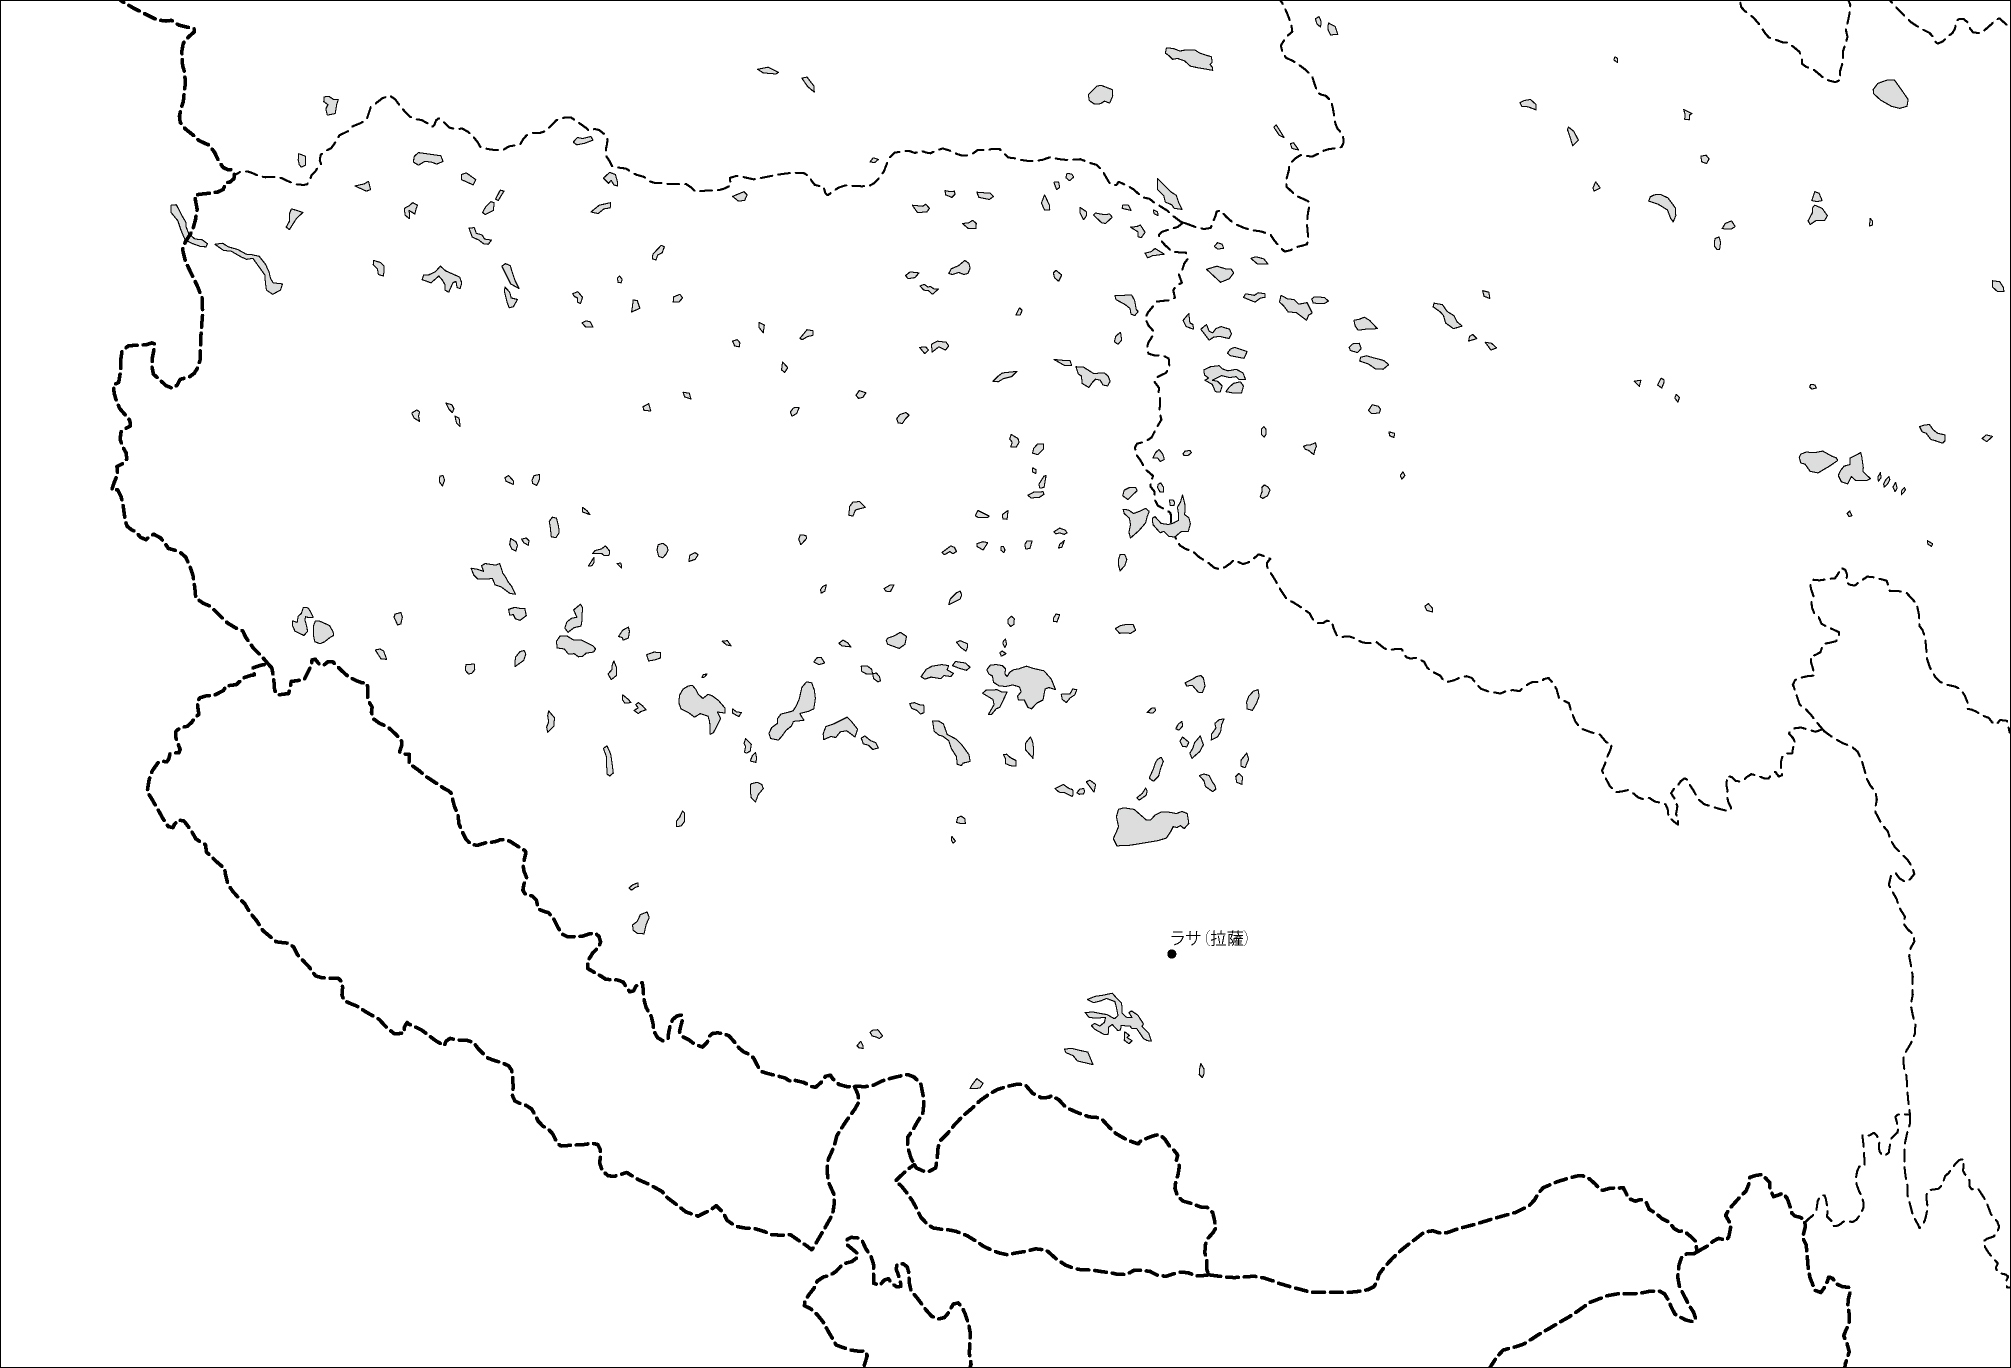 チベット自治区白地図(省都あり)のフリーデータの画像